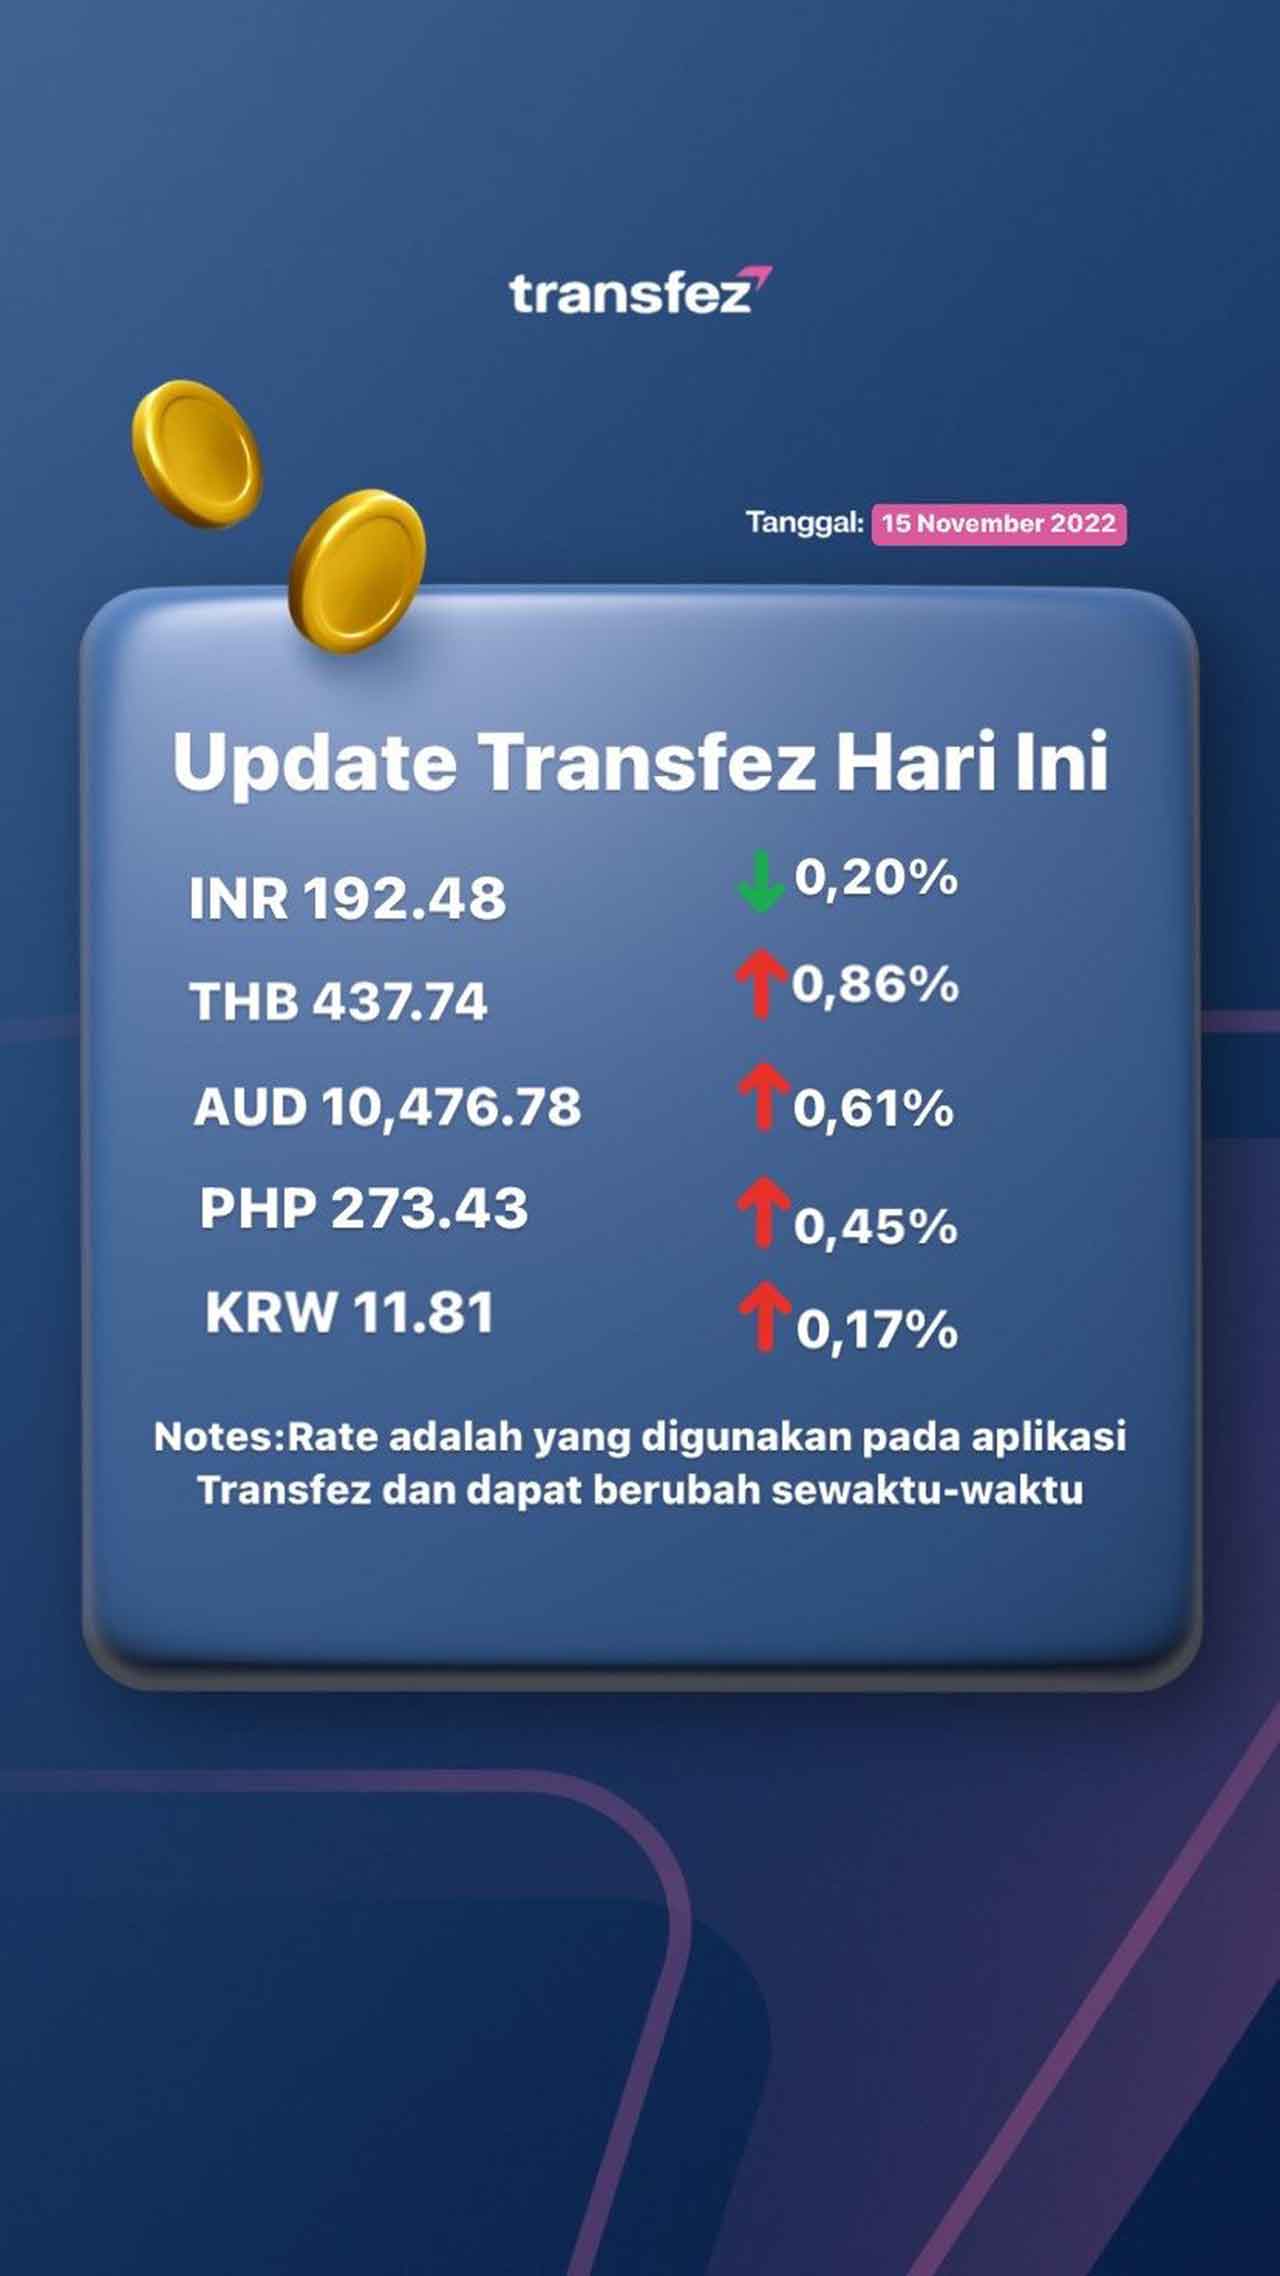 Update Rate Transfez Hari Ini 15 November 2022